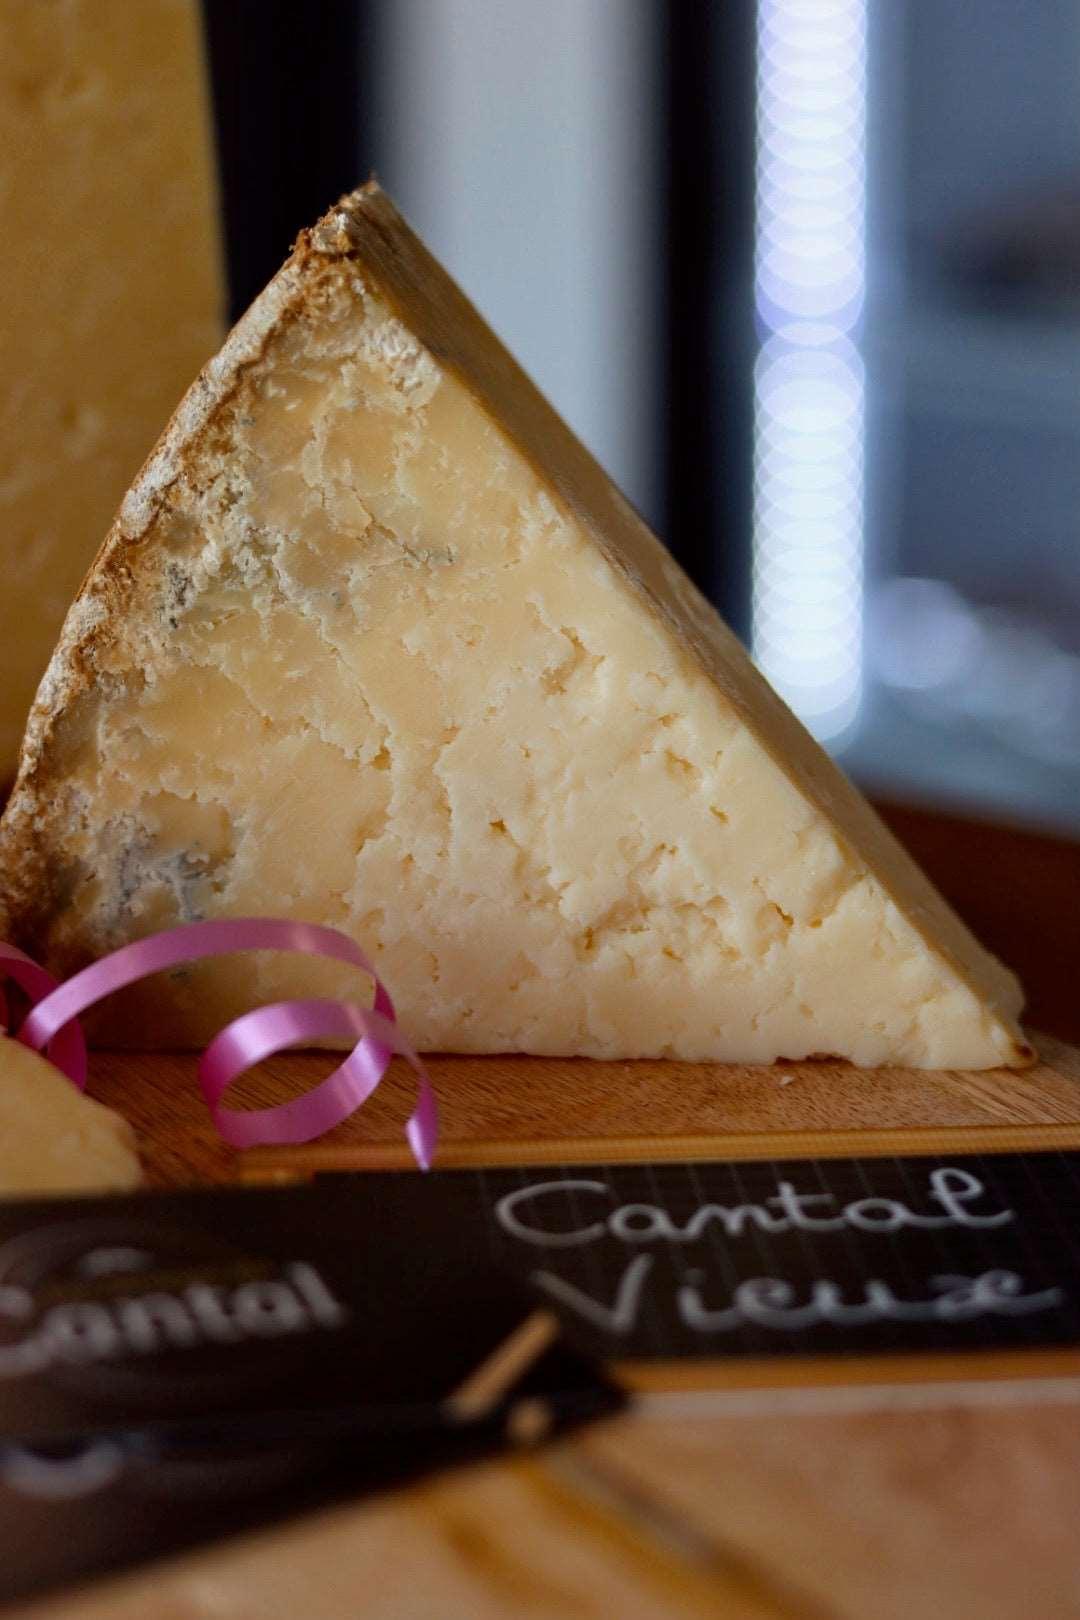 
                  
                    Le Cantal Vieux est un fromage au lait cru de vache qui a été affiné pendant plus de 8 mois, lui conférant un goût puissant et une texture friable. Reconnaissable à sa croûte naturelle et à sa pâte couleur ivoire, ce fromage traditionnel de la région Auvergne Rhône-Alpes est un vrai régal pour les amateurs de fromages forts. Dégustez-le accompagné d'un bon vin rouge ou dans vos recettes de cuisine pour ajouter une touche d'authenticité et de saveur.
                  
                